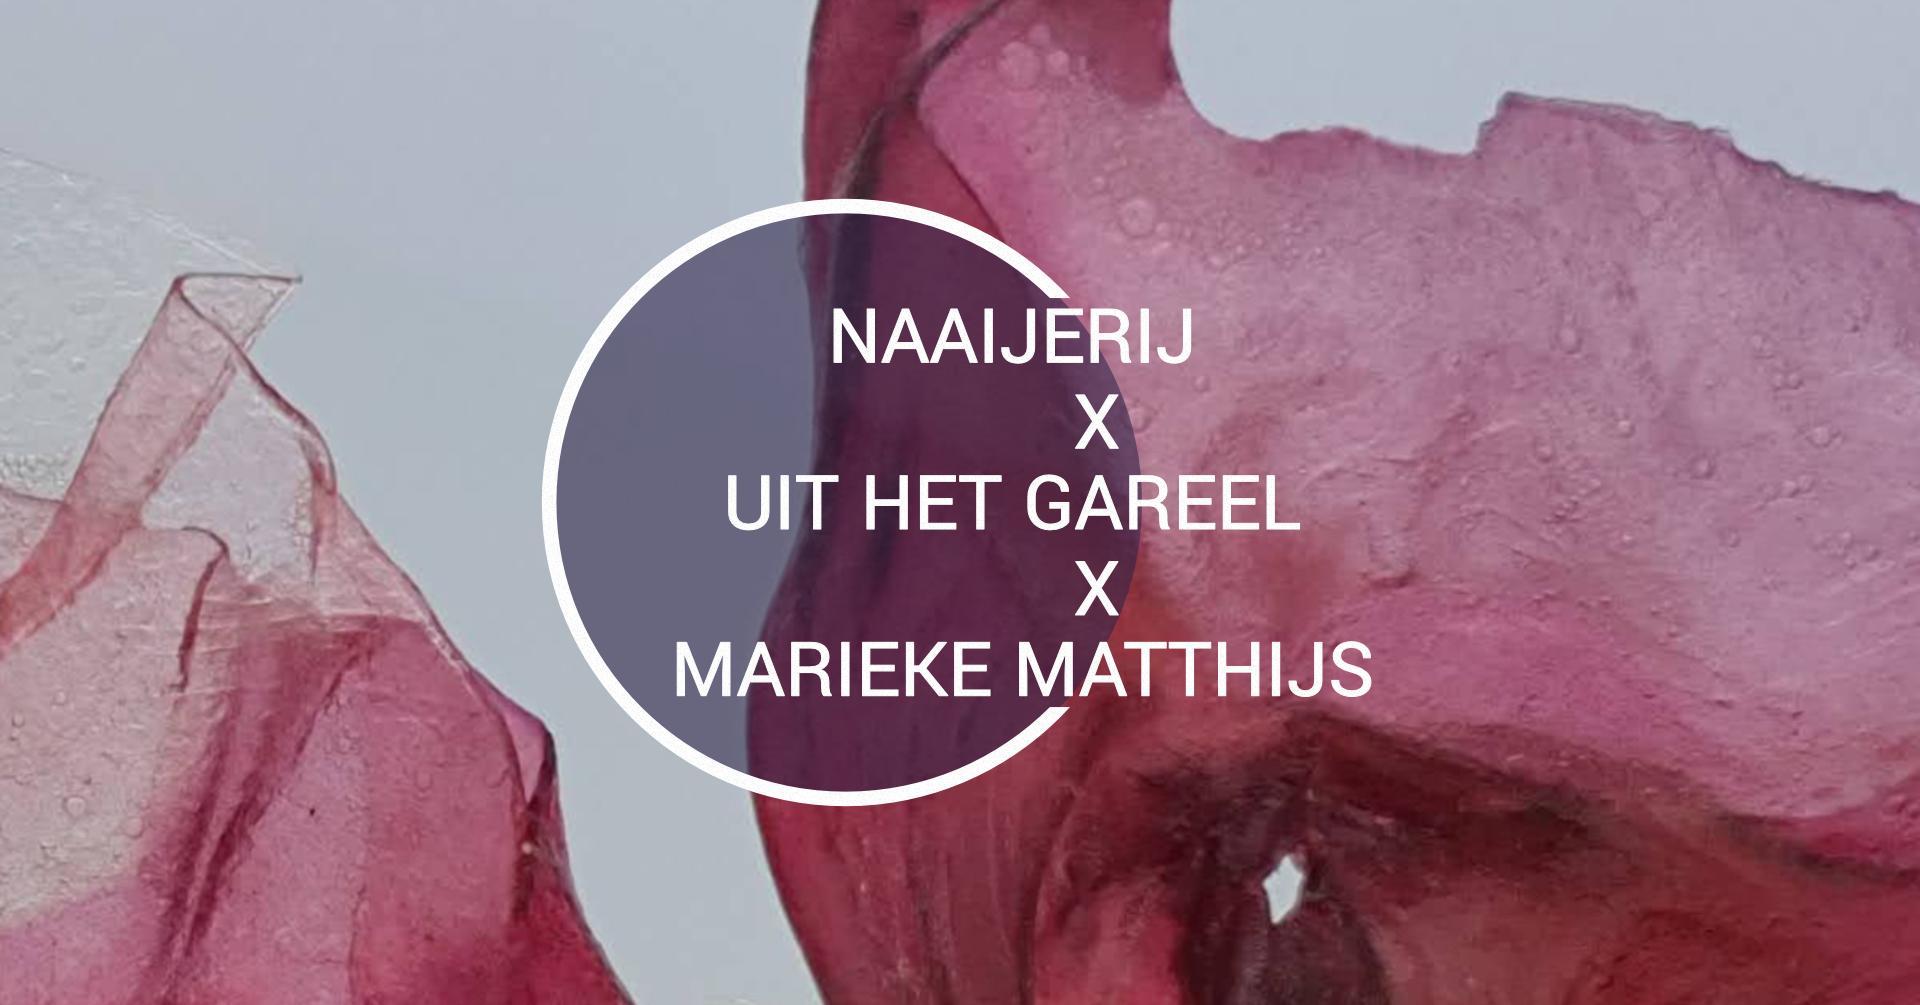 Marieke Matthijs X Uit Het Gareel X Naaierij